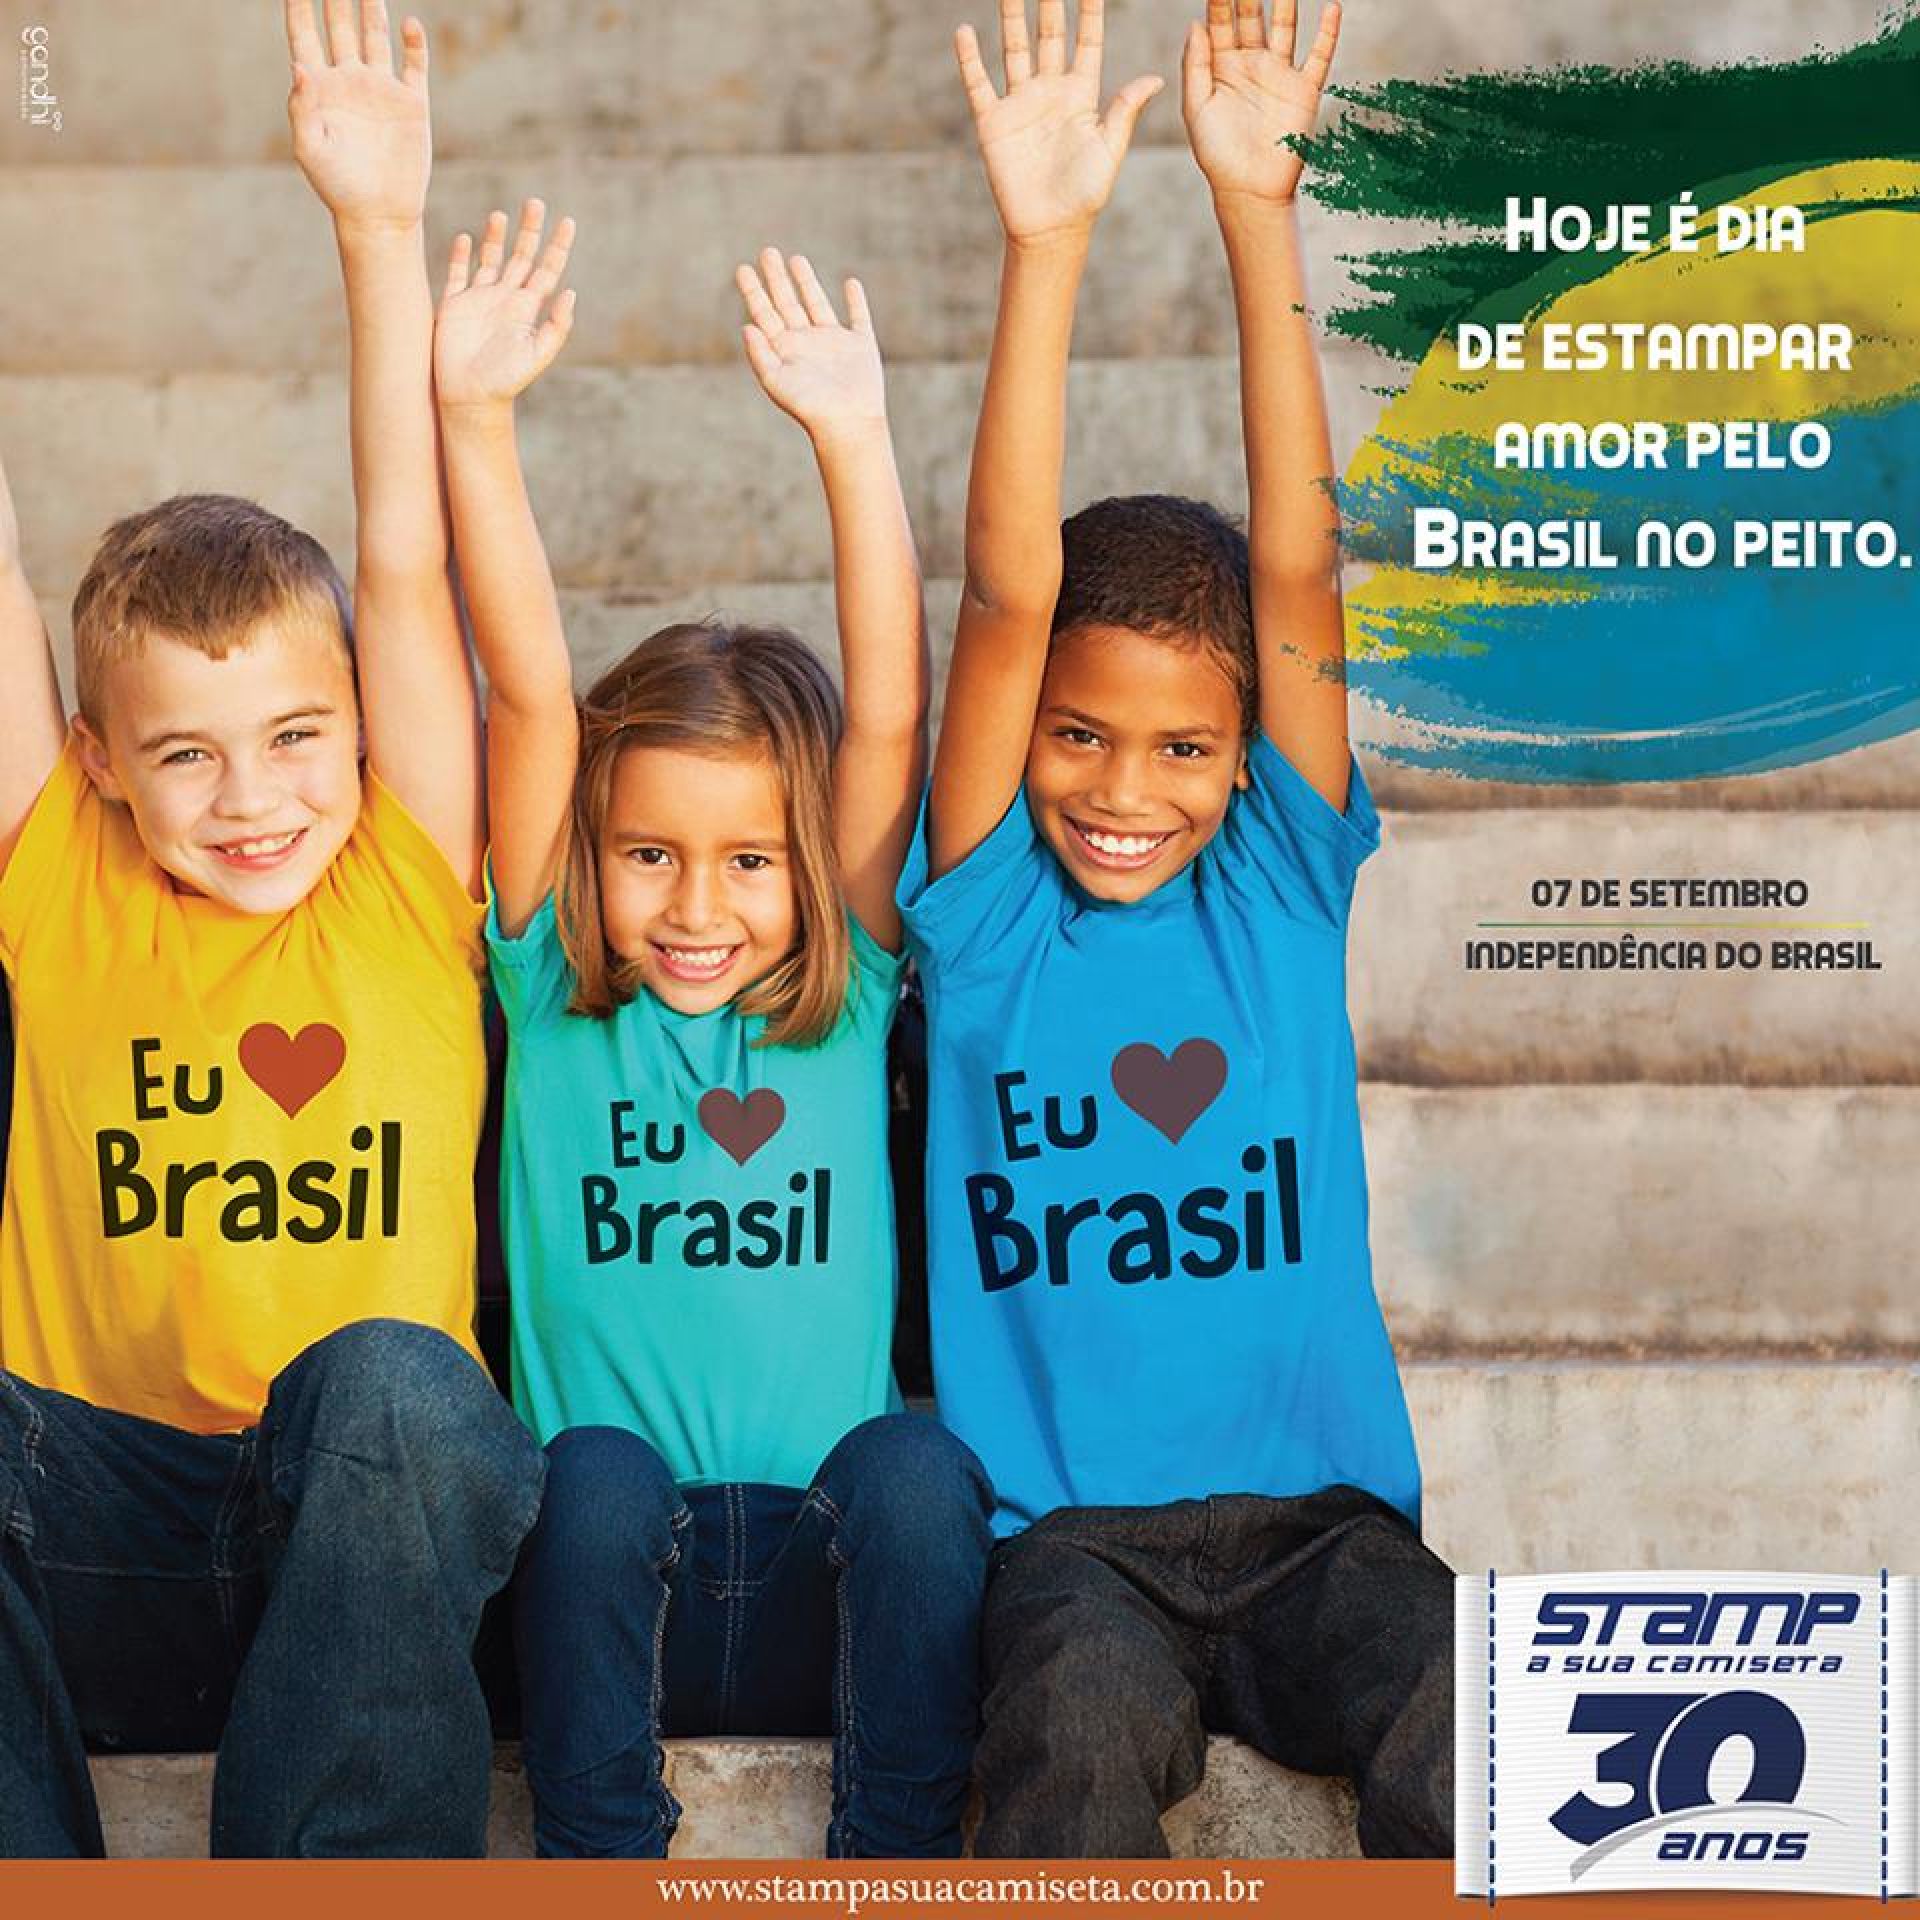 Hoje é dia de Stampar amor pelo Brasil